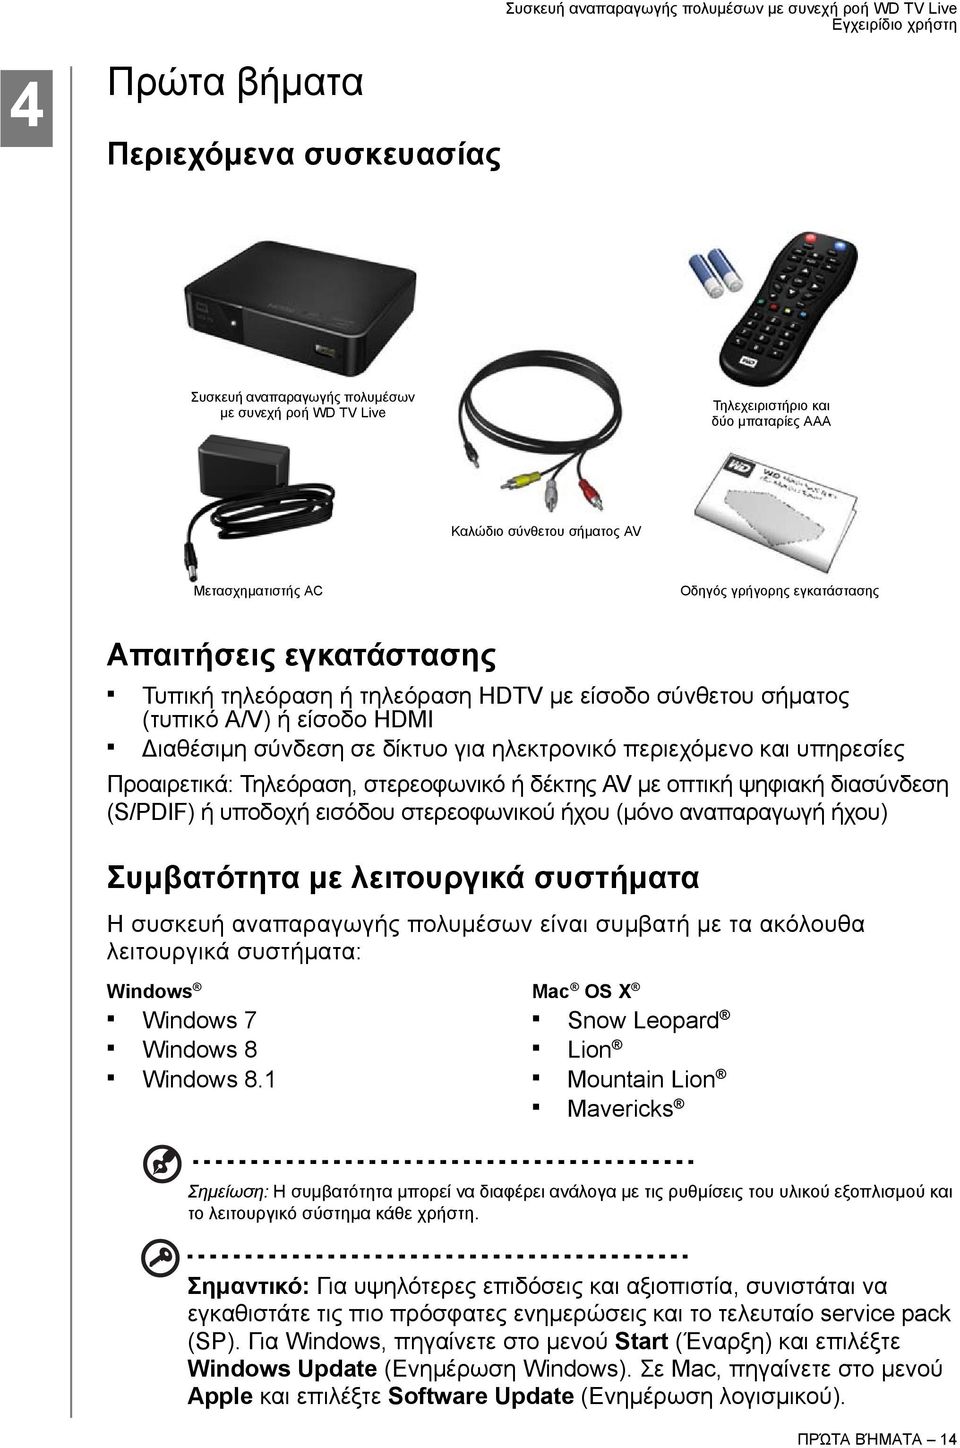 Προαιρετικά: Τηλεόραση, στερεοφωνικό ή δέκτης AV με οπτική ψηφιακή διασύνδεση (S/PDIF) ή υποδοχή εισόδου στερεοφωνικού ήχου (μόνο αναπαραγωγή ήχου) Συμβατότητα με λειτουργικά συστήματα Η συσκευή